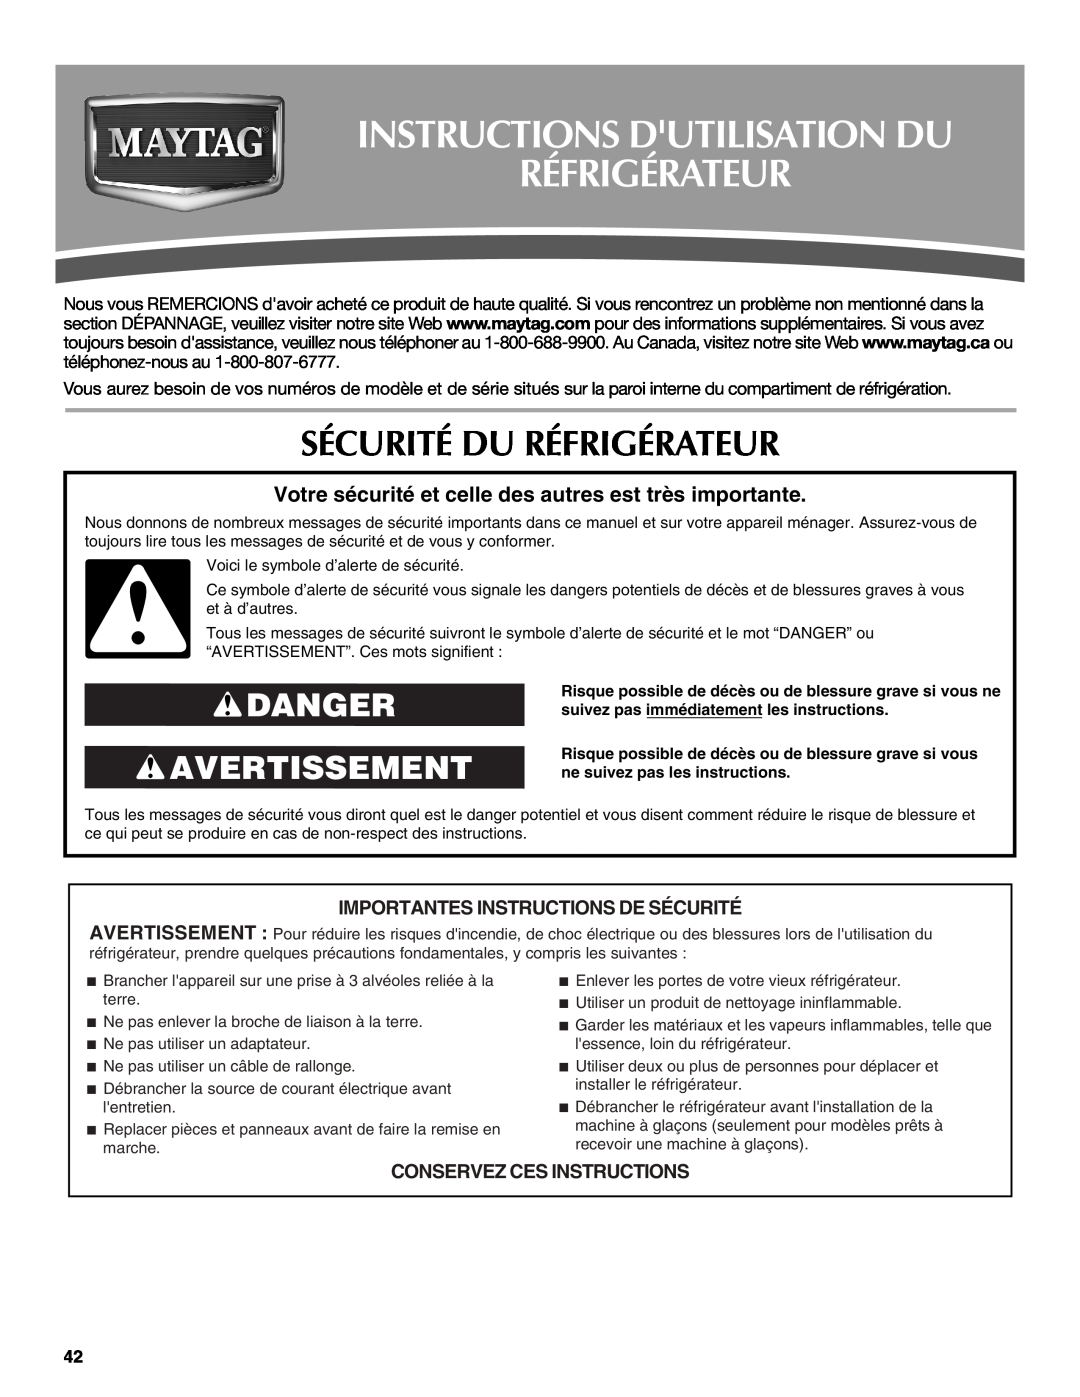 Maytag MFD2562VEW Instructions Dutilisation Du Réfrigérateur, Sécurité Du Réfrigérateur, Danger Avertissement 